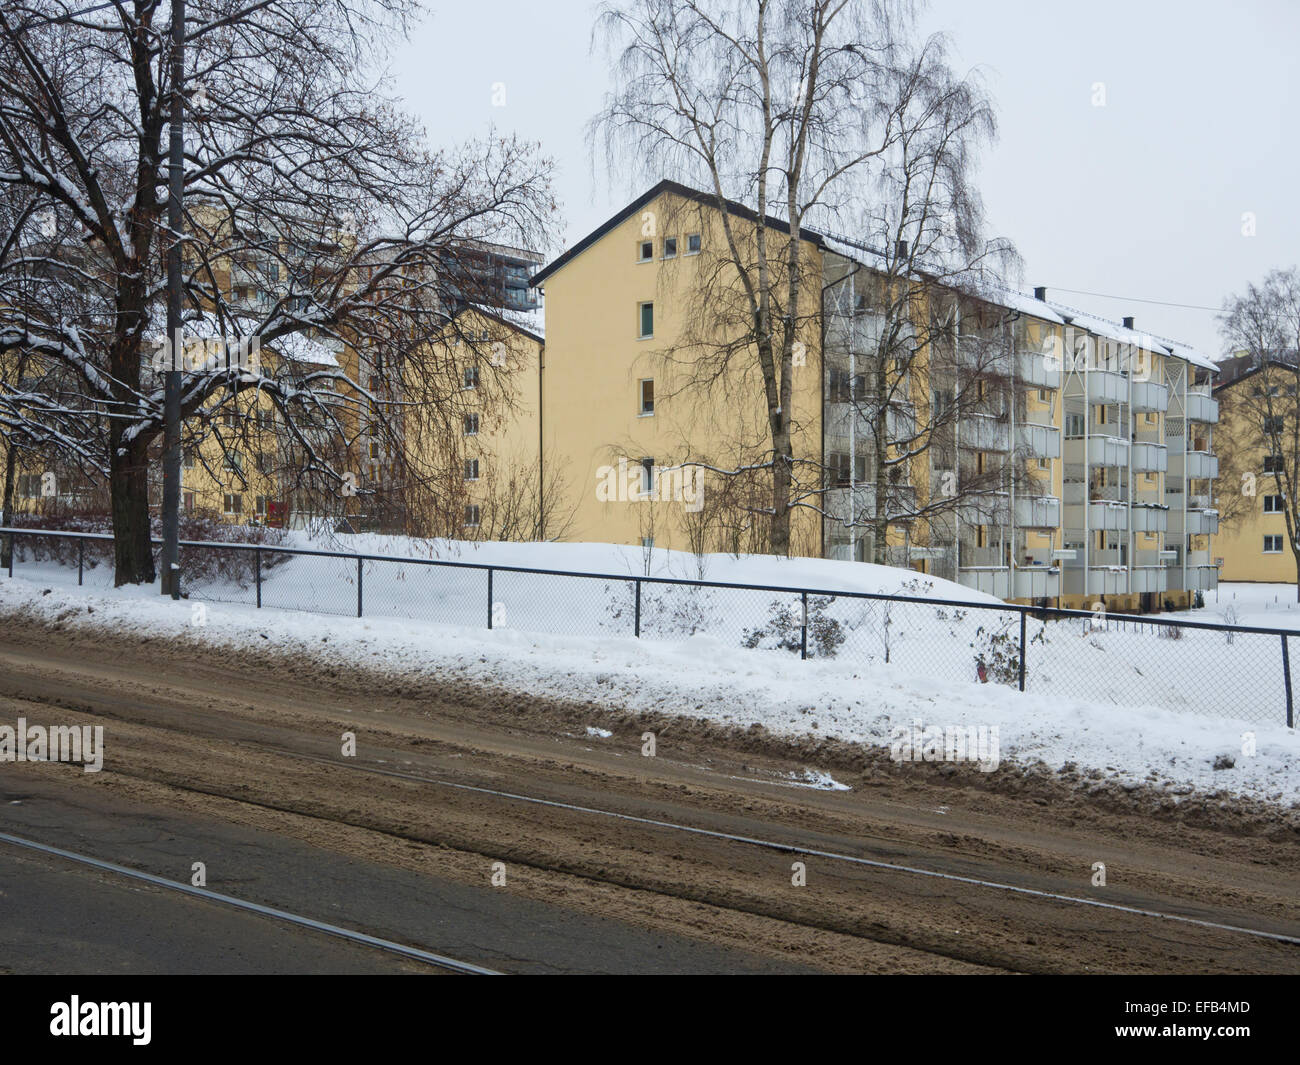 Oslo in wintertime, yellow apartment blocks street with muddy snow and tram tracks (Storo / Sandaker) Stock Photo